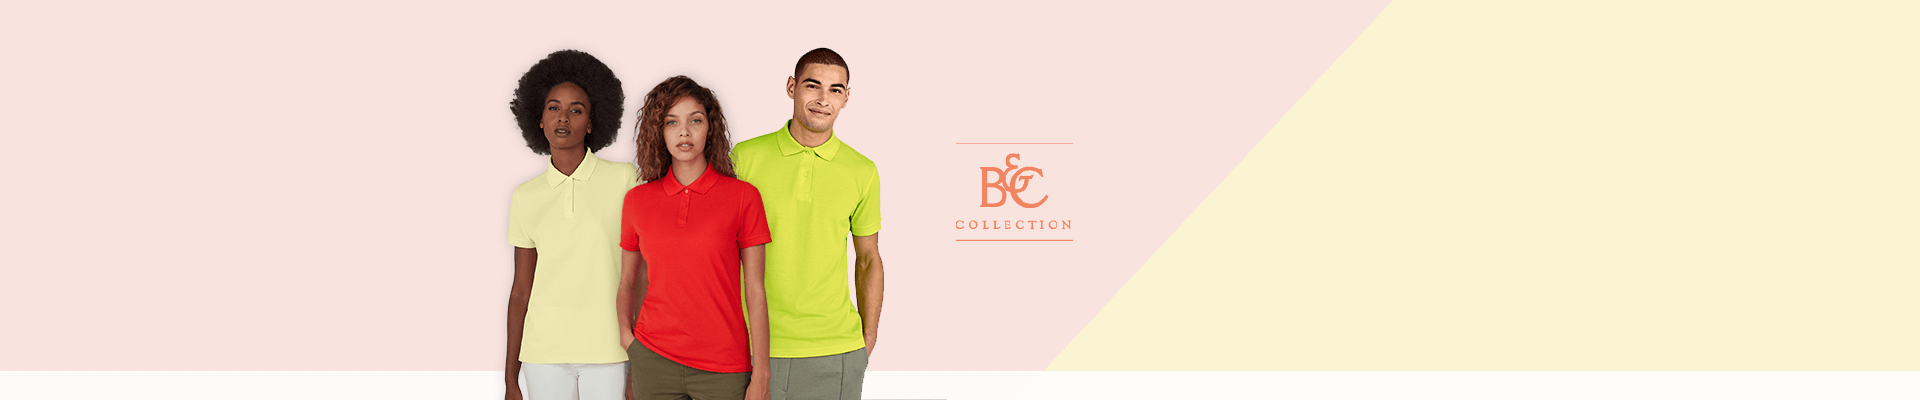 Nová barevná polo trička B&C.
Zajistěte si nyní sadu vzorků za speciální cenu.